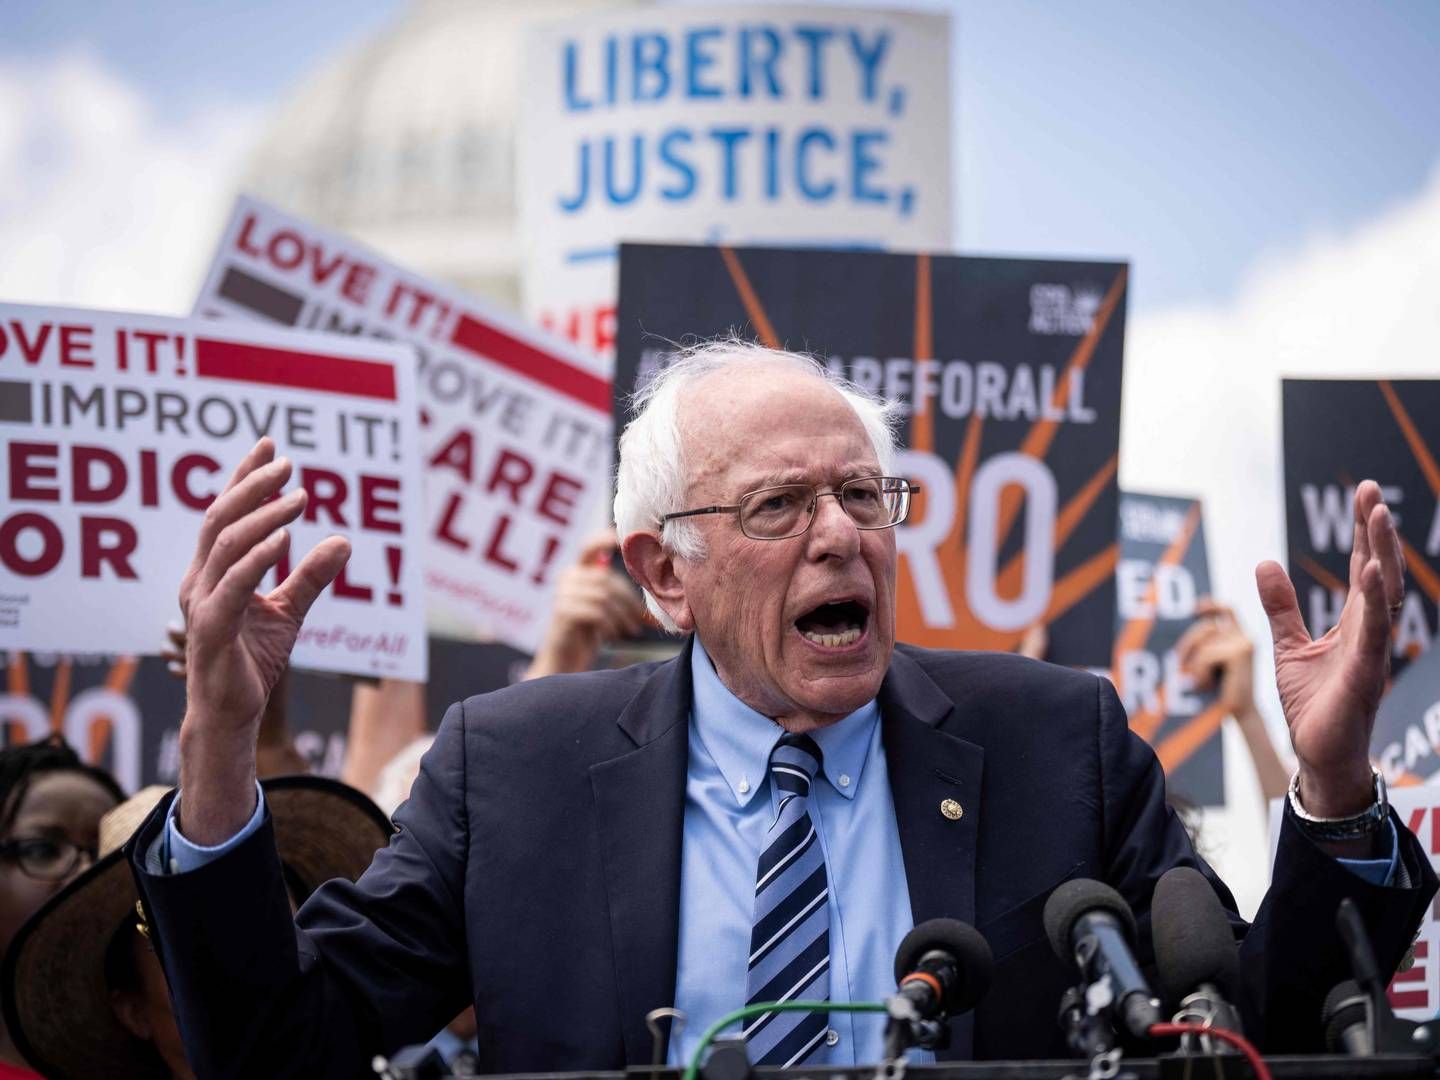 Den amerikanske senator Bernie Sanders er formand for senatets sundhedskomité HELP, hvor han er fokuseret på at nedbringe medicinpriserne i USA. | Photo: Drew Angerer